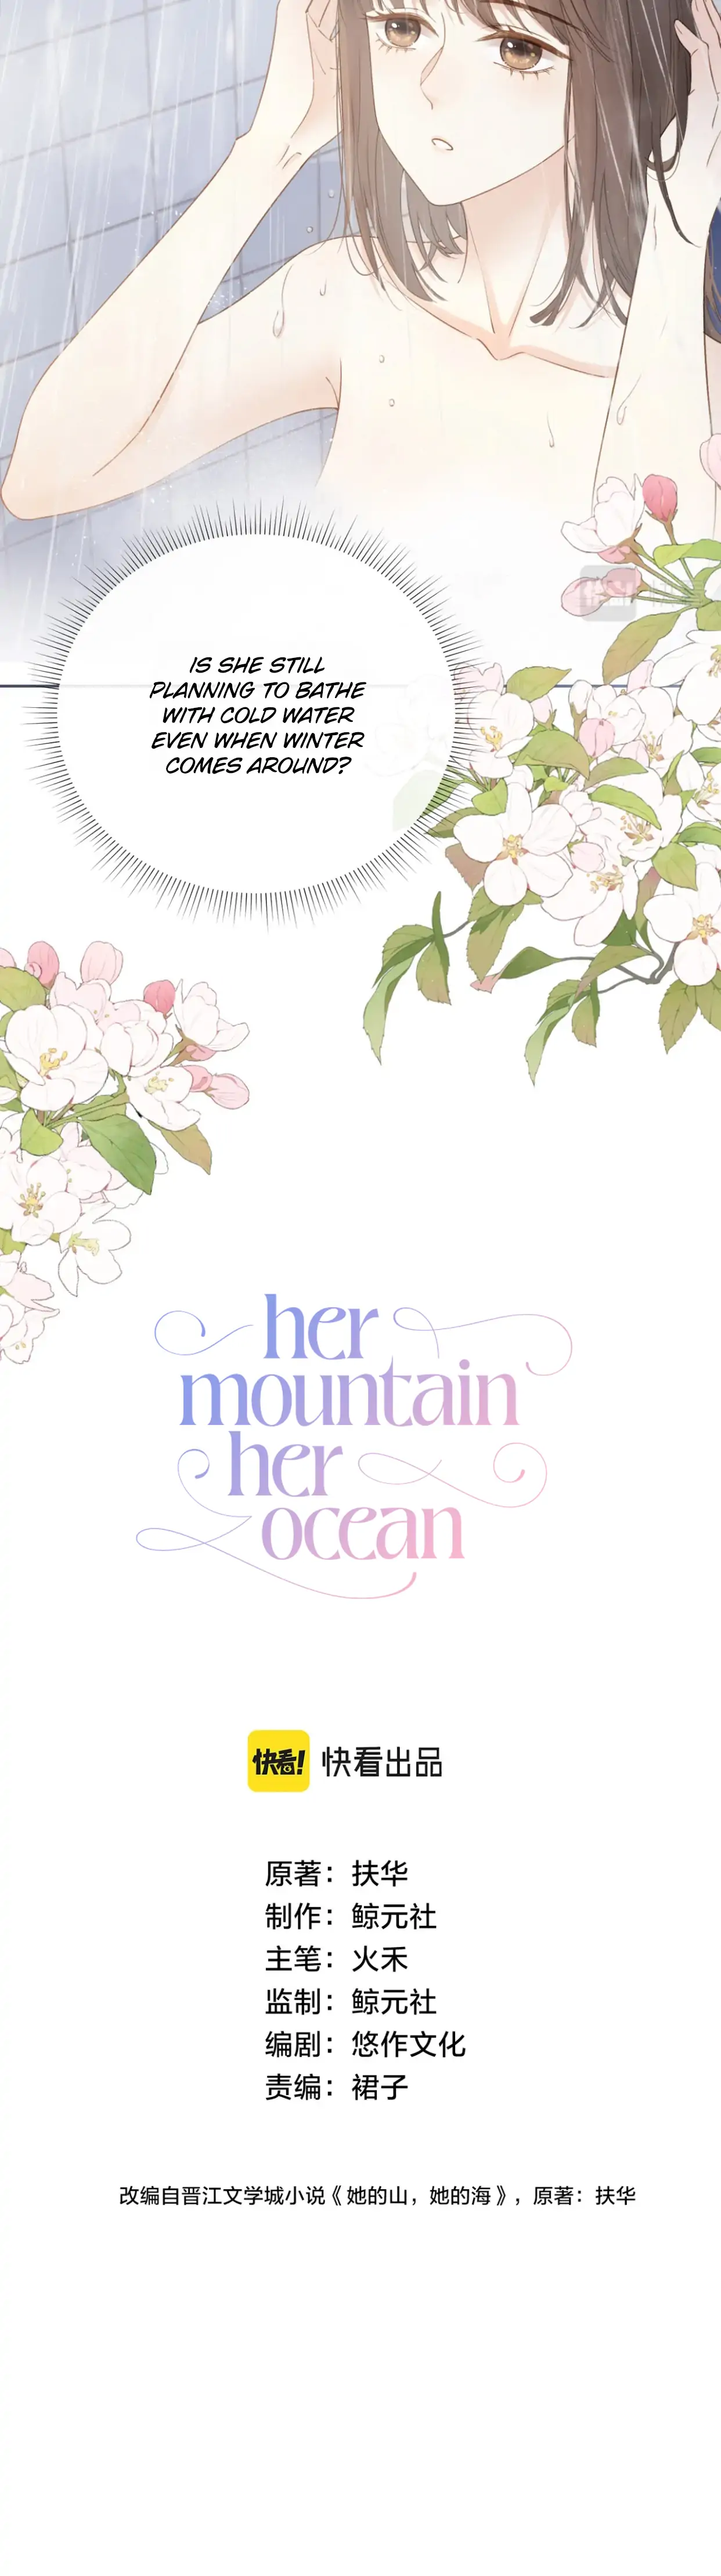 Her Mountain, Her Ocean chapter 11